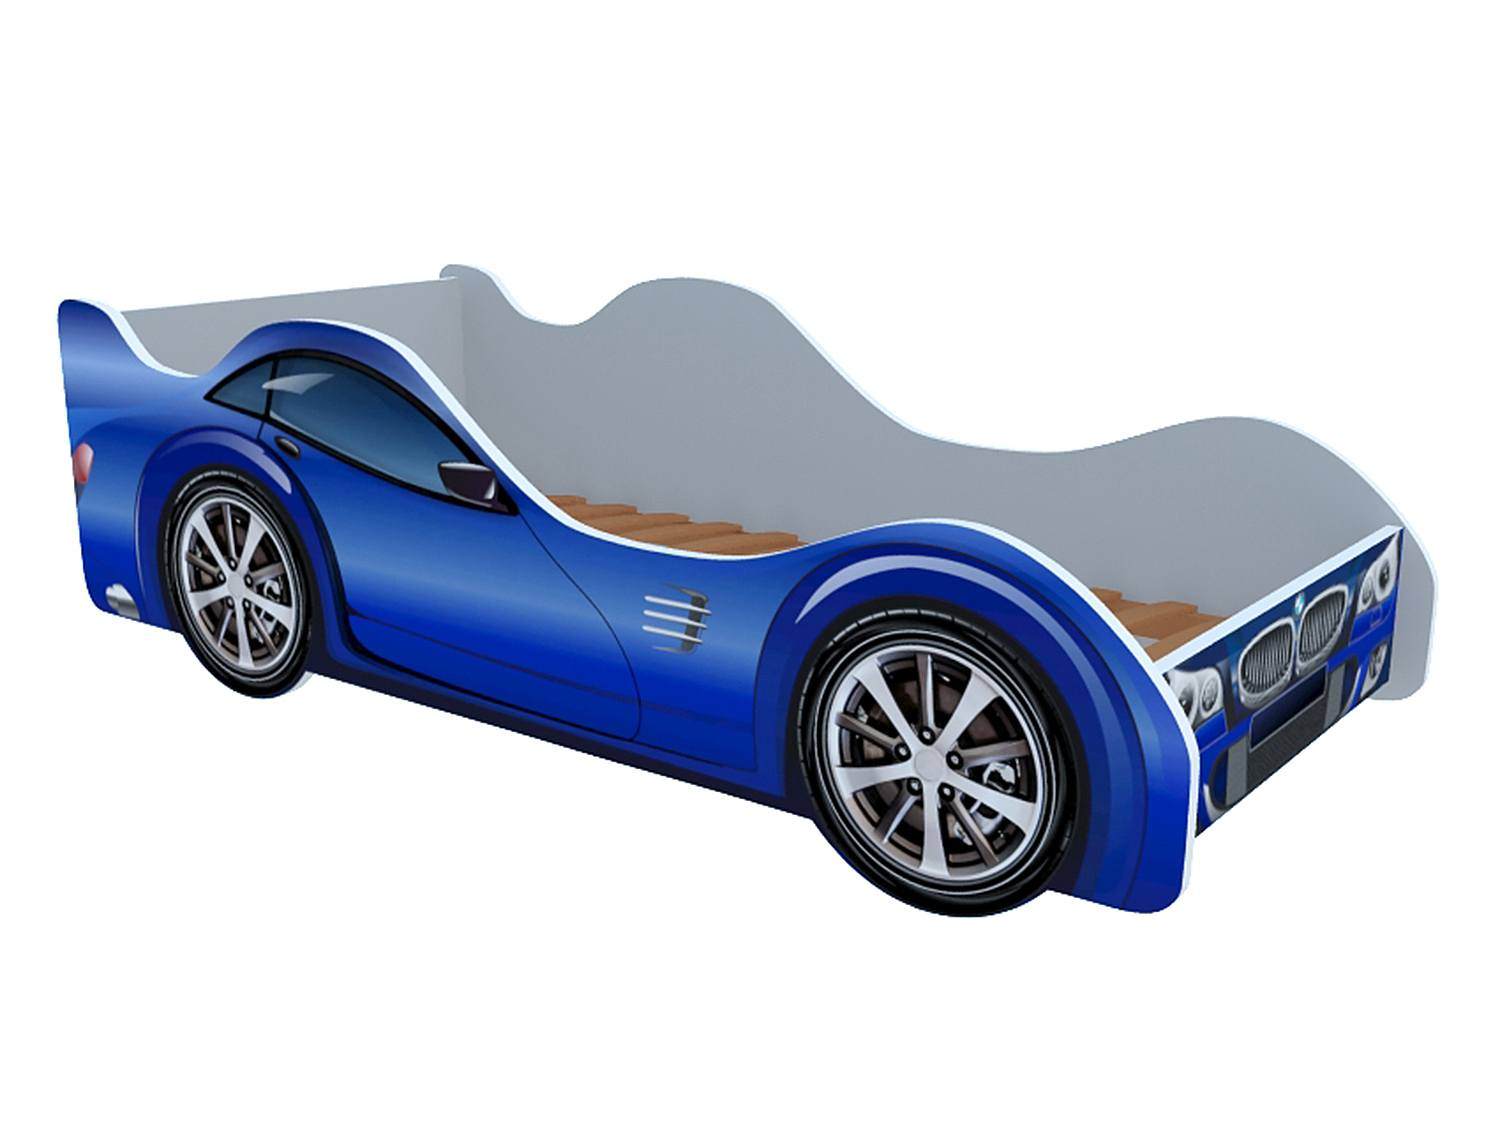 Синяя машинка для детей. Кровать машинка Феррари. Кровать детская машинка БМВ. Кровать-машинка БМВ синяя. Кровать машина Феррари синяя.